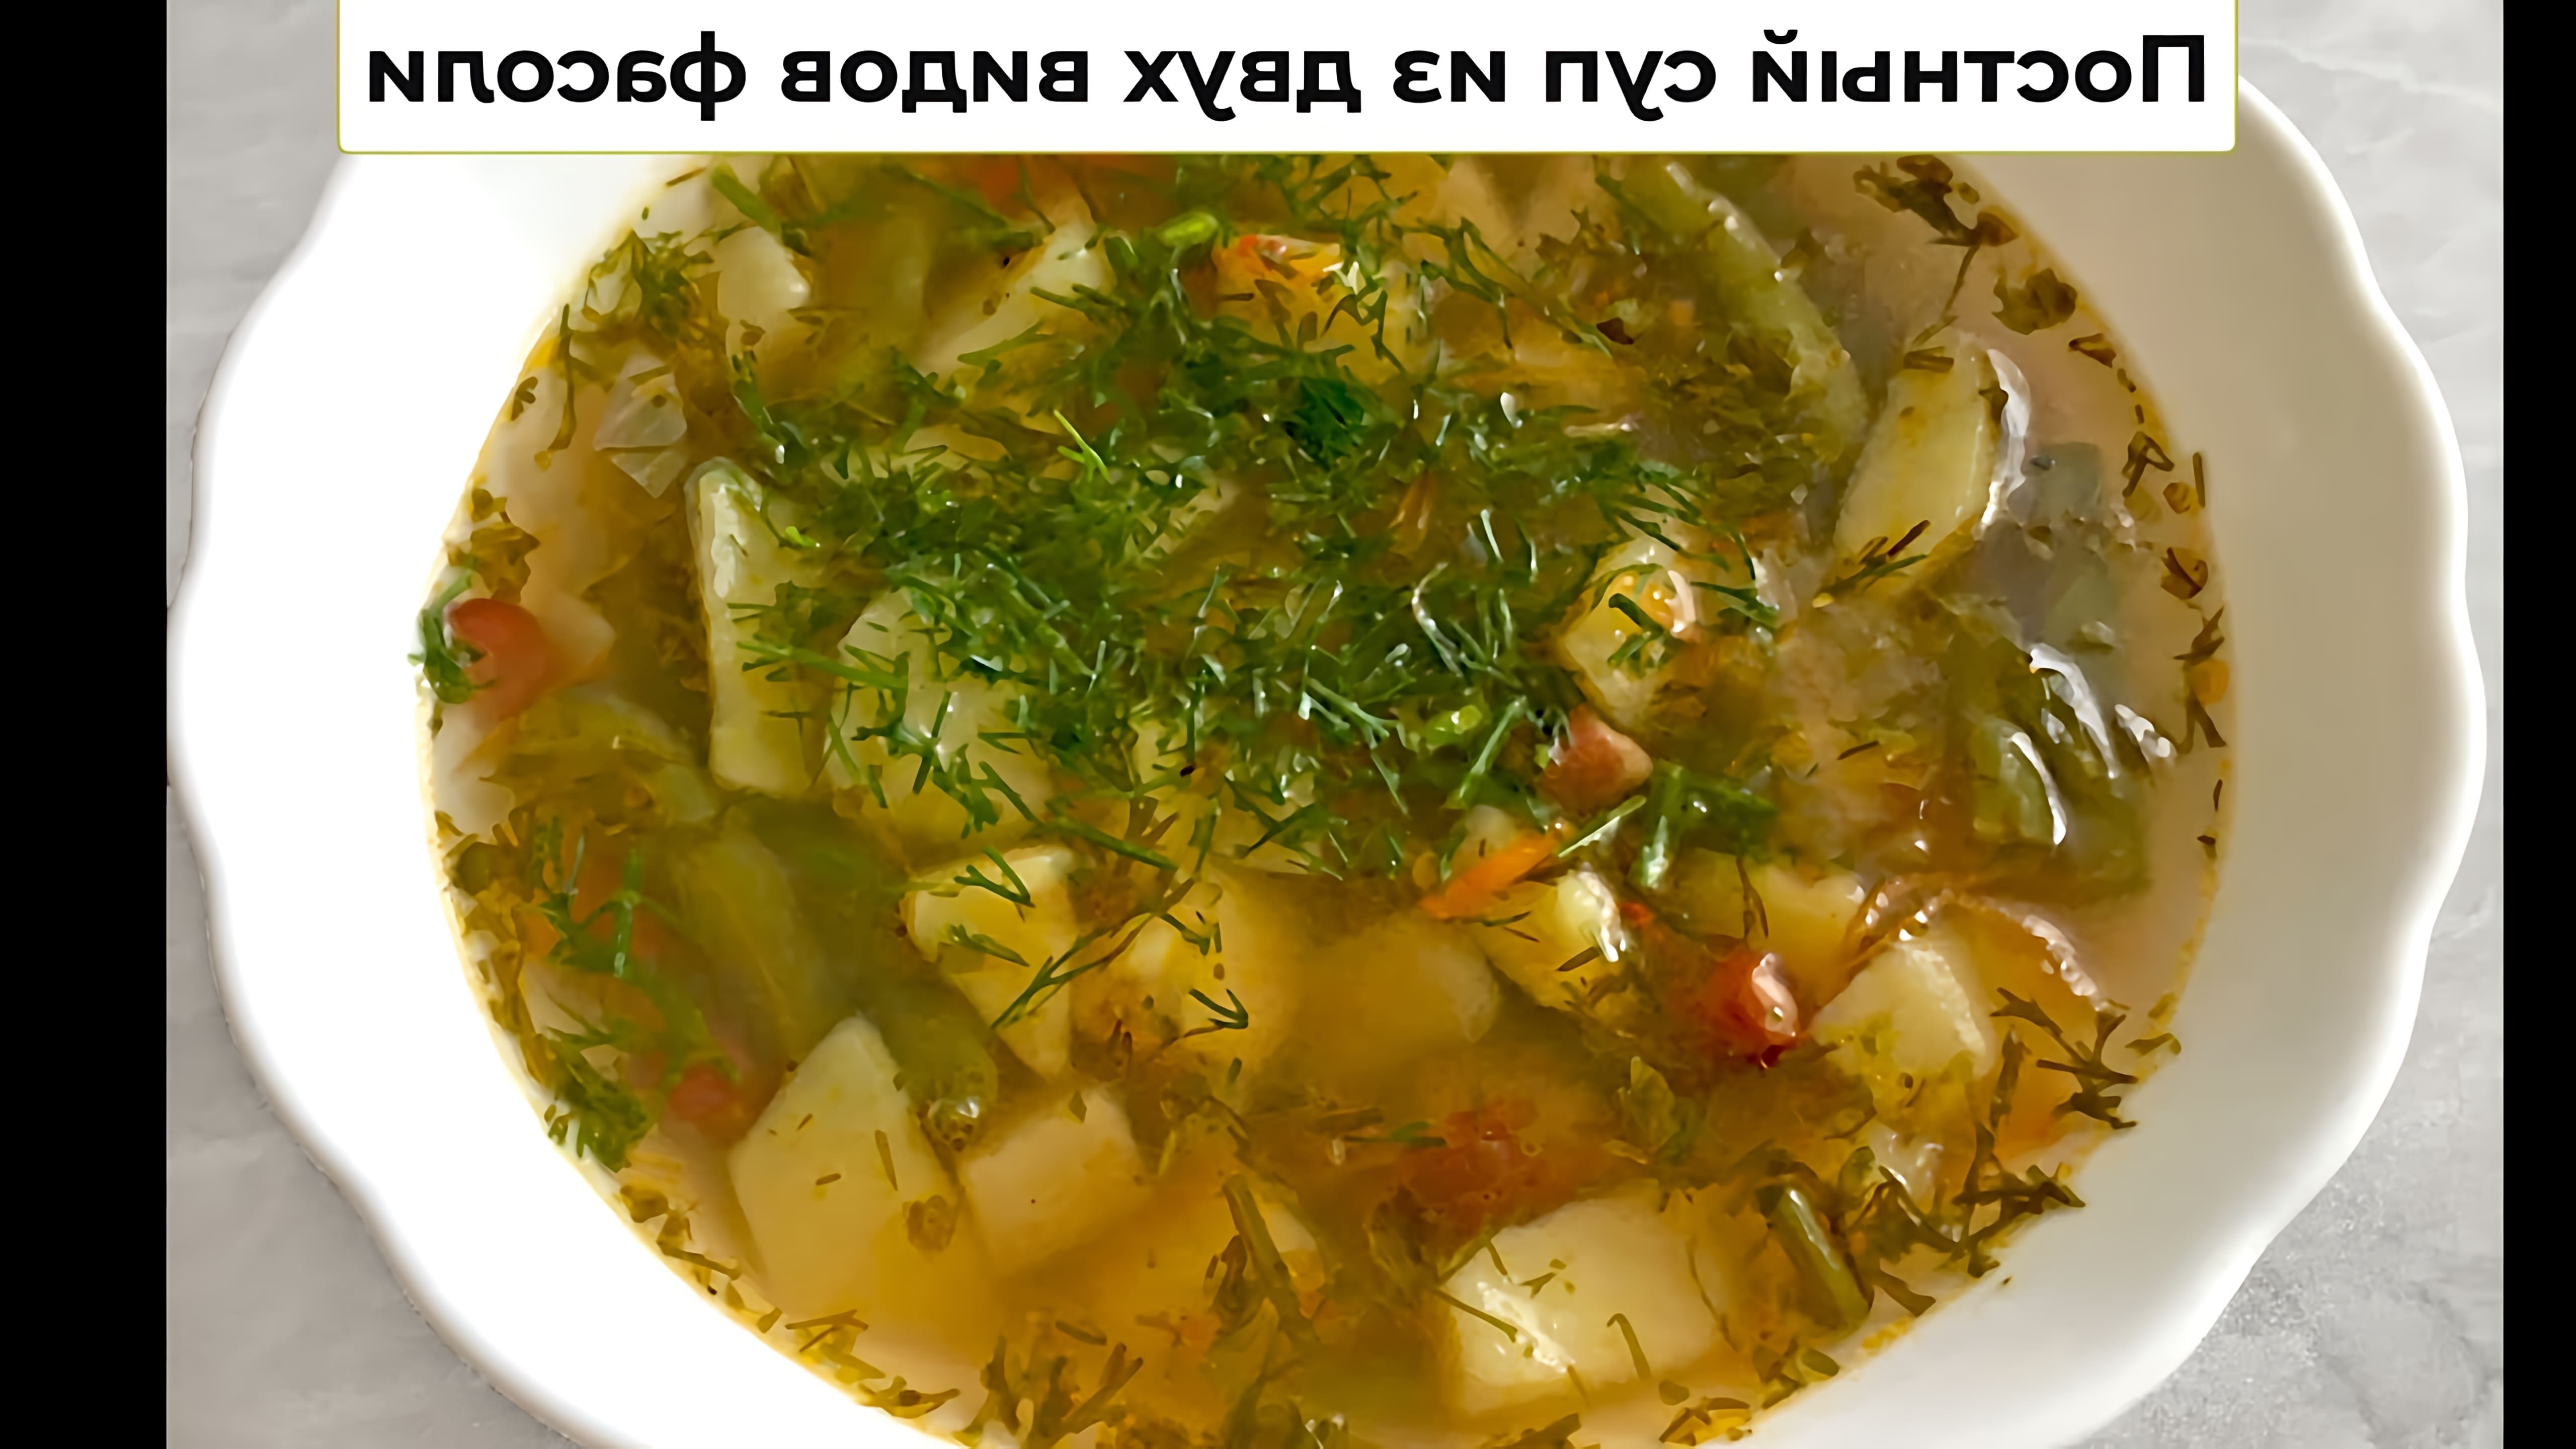 В этом видео демонстрируется процесс приготовления вкусного и полезного супа из двух видов фасоли - стручковой и красной